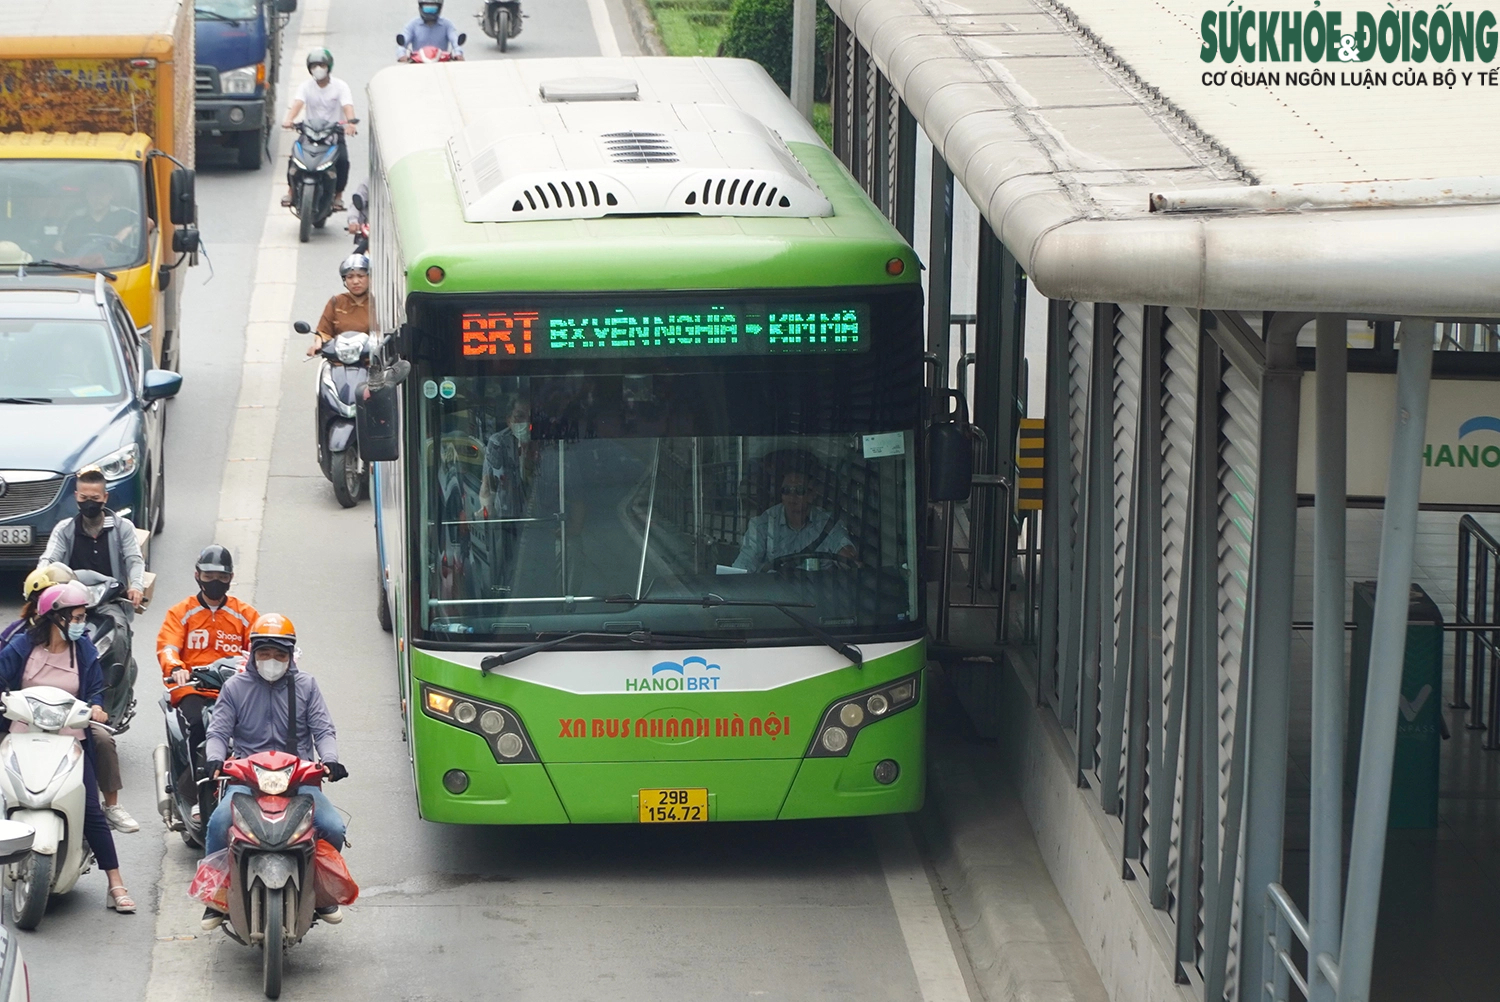 Hiện trạng tuyến buýt BRT ở Hà Nội sắp bị 'khai tử' sau nhiều năm hoạt động- Ảnh 1.